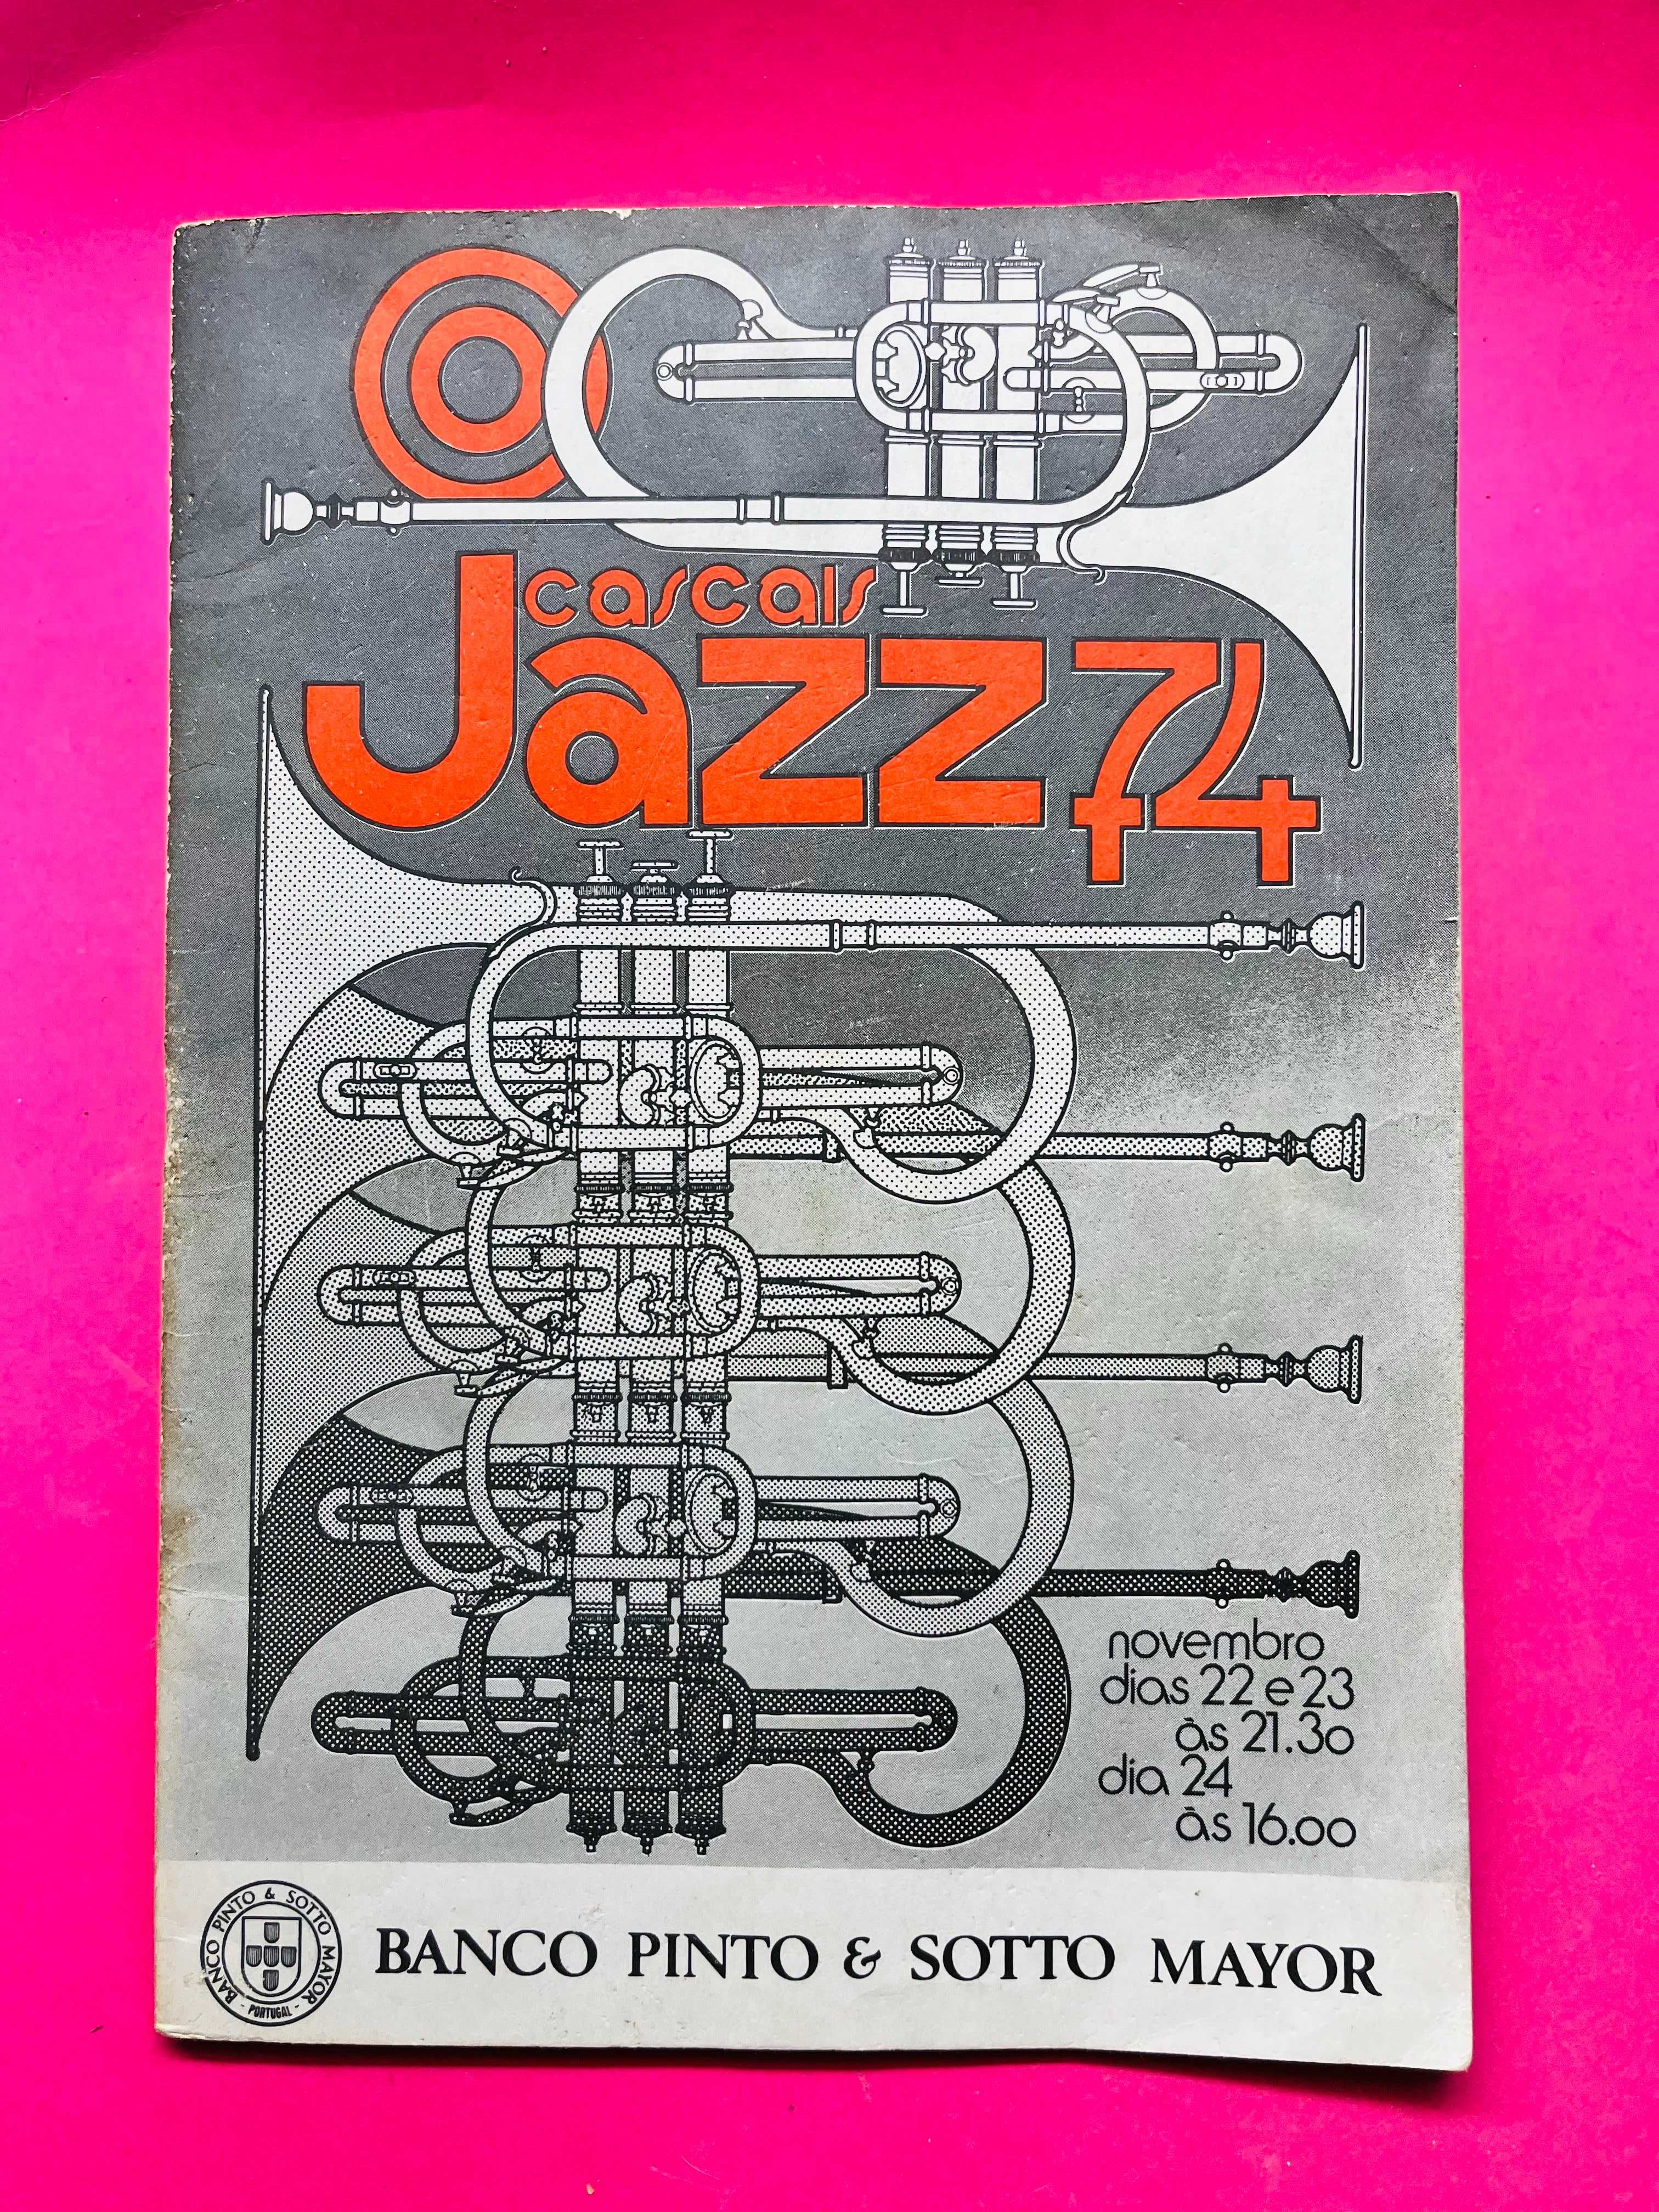 Cascais Jazz - 74